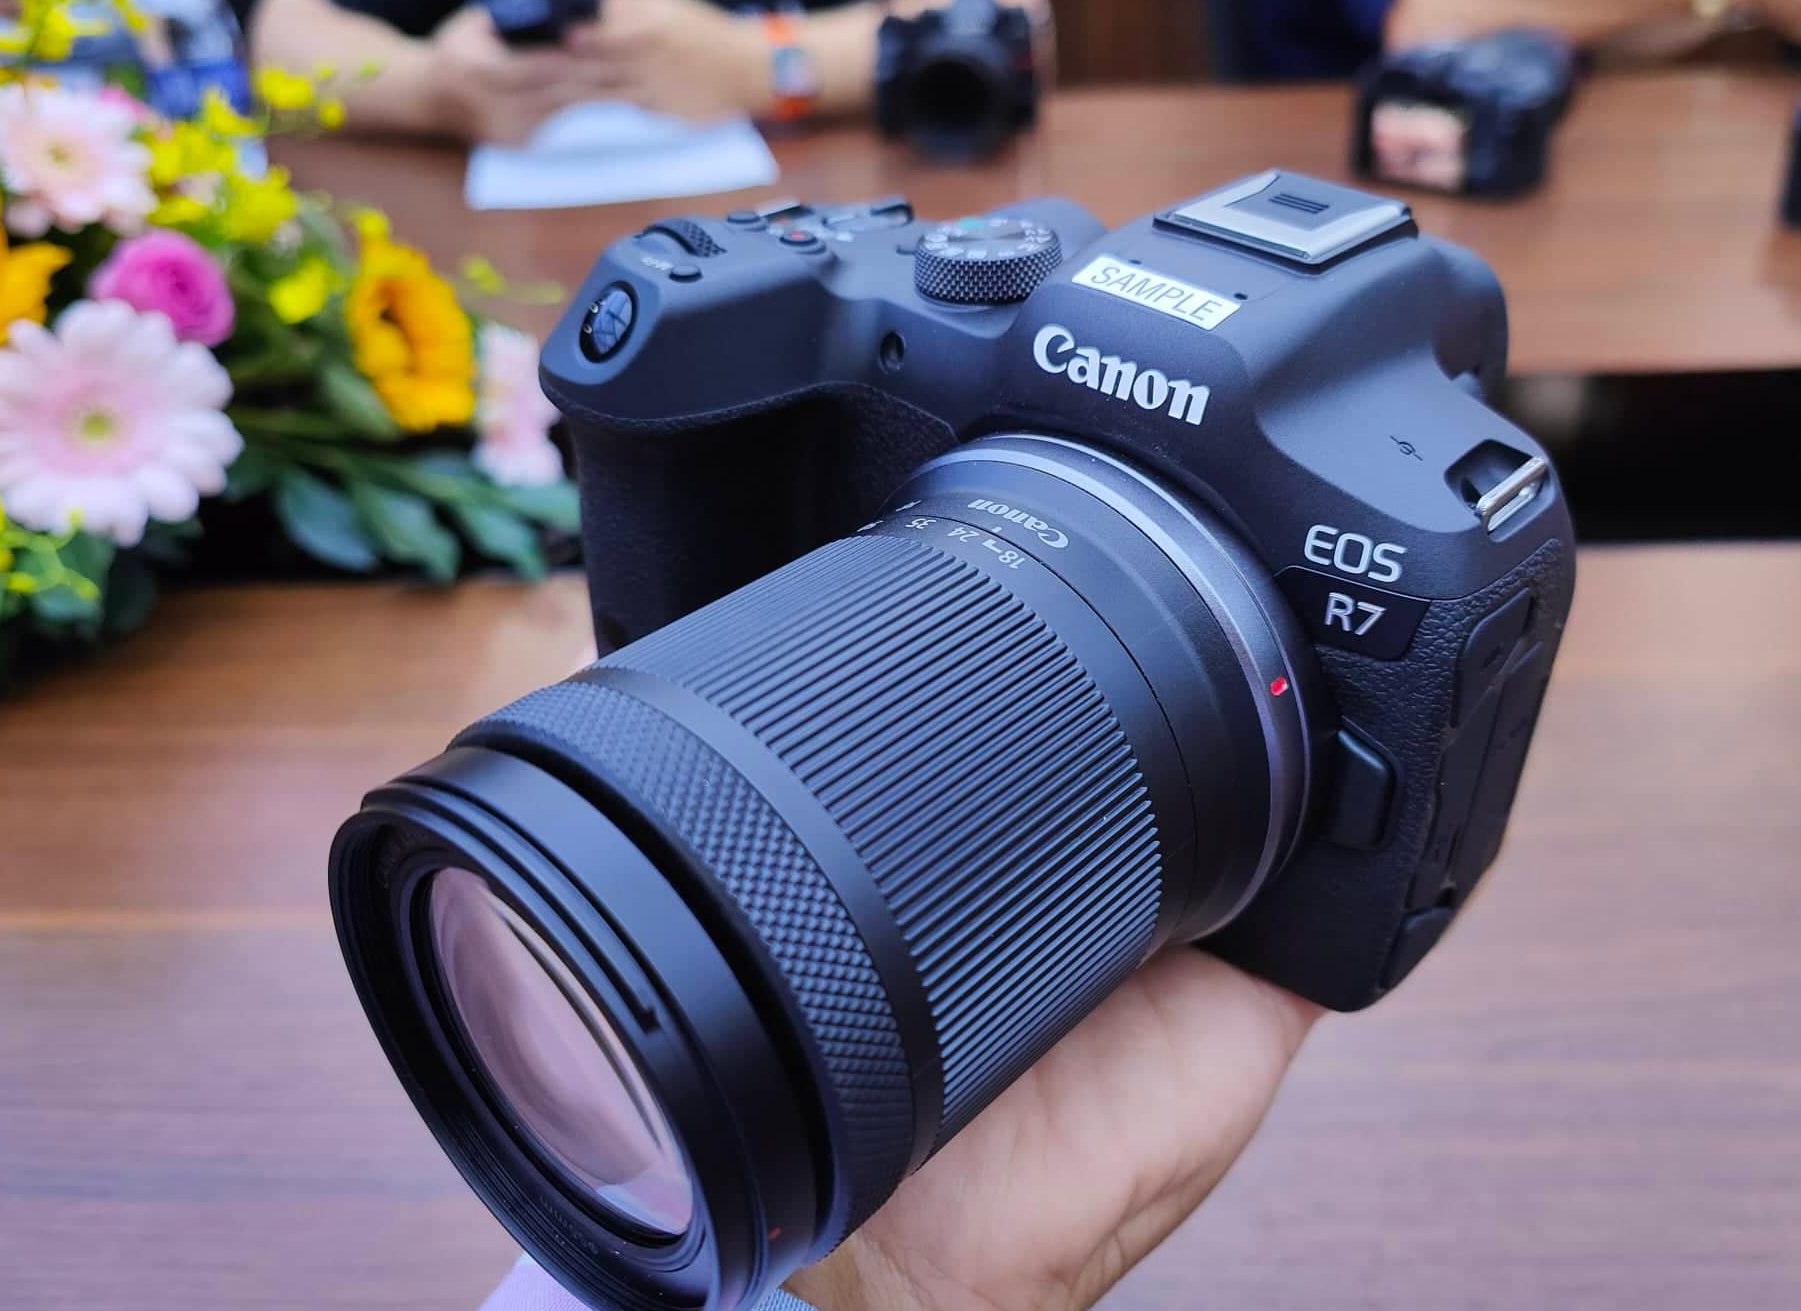 Canon R7, R10 là những sản phẩm máy ảnh chuyên nghiệp mới nhất của hãng Canon. Các tính năng và chất lượng của sản phẩm sẽ thực sự khiến bạn ngỡ ngàng. Hãy thử ngay để khám phá thế giới bằng góc nhìn mới lạ và chất lượng tốt nhất.